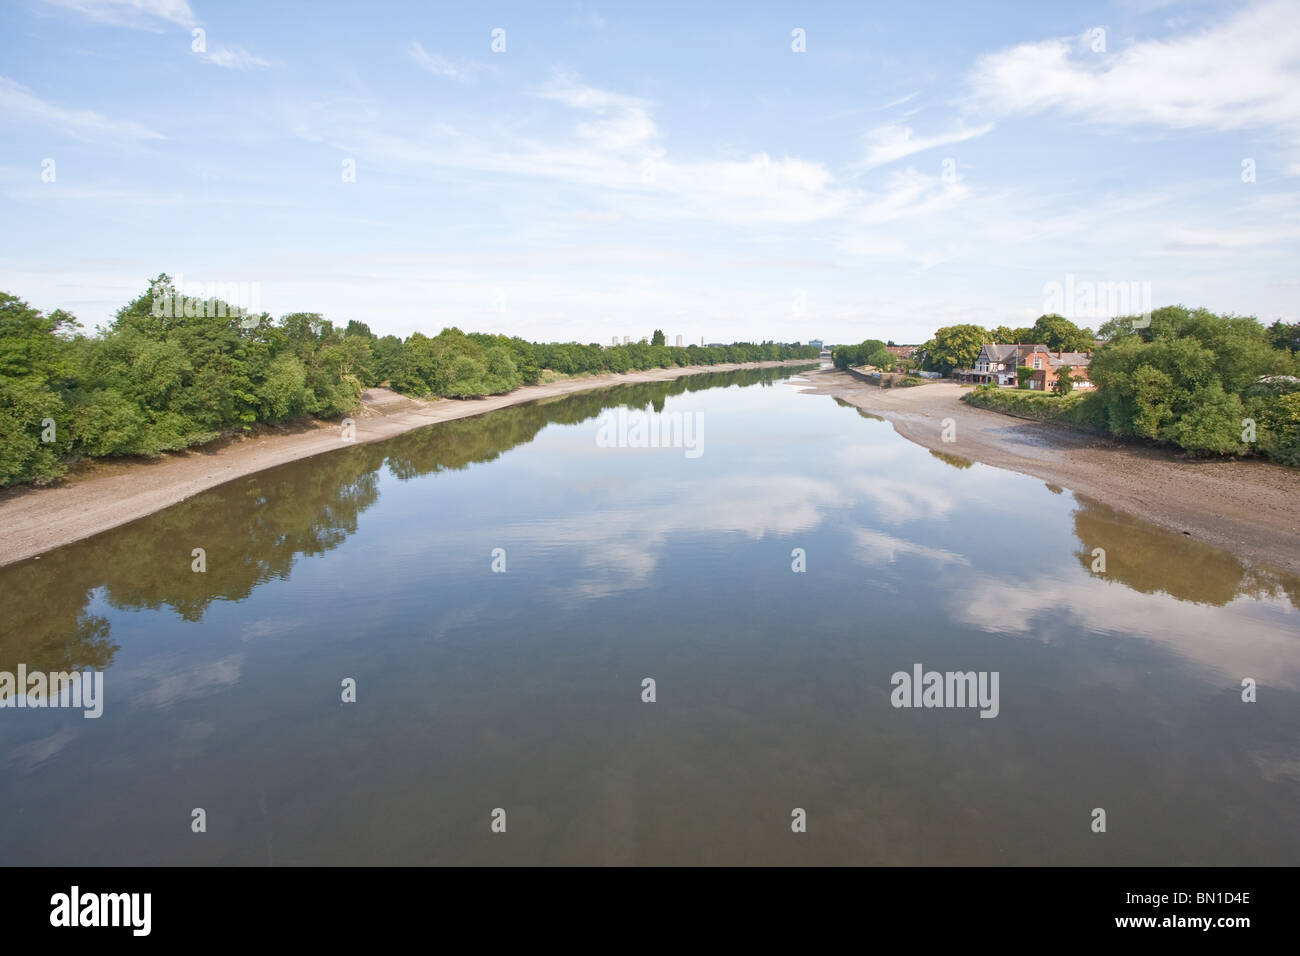 El río Támesis, visto desde el puente de Chiswick. Chiswick, Hounslow, Londres, Inglaterra, Reino Unido. Foto de stock